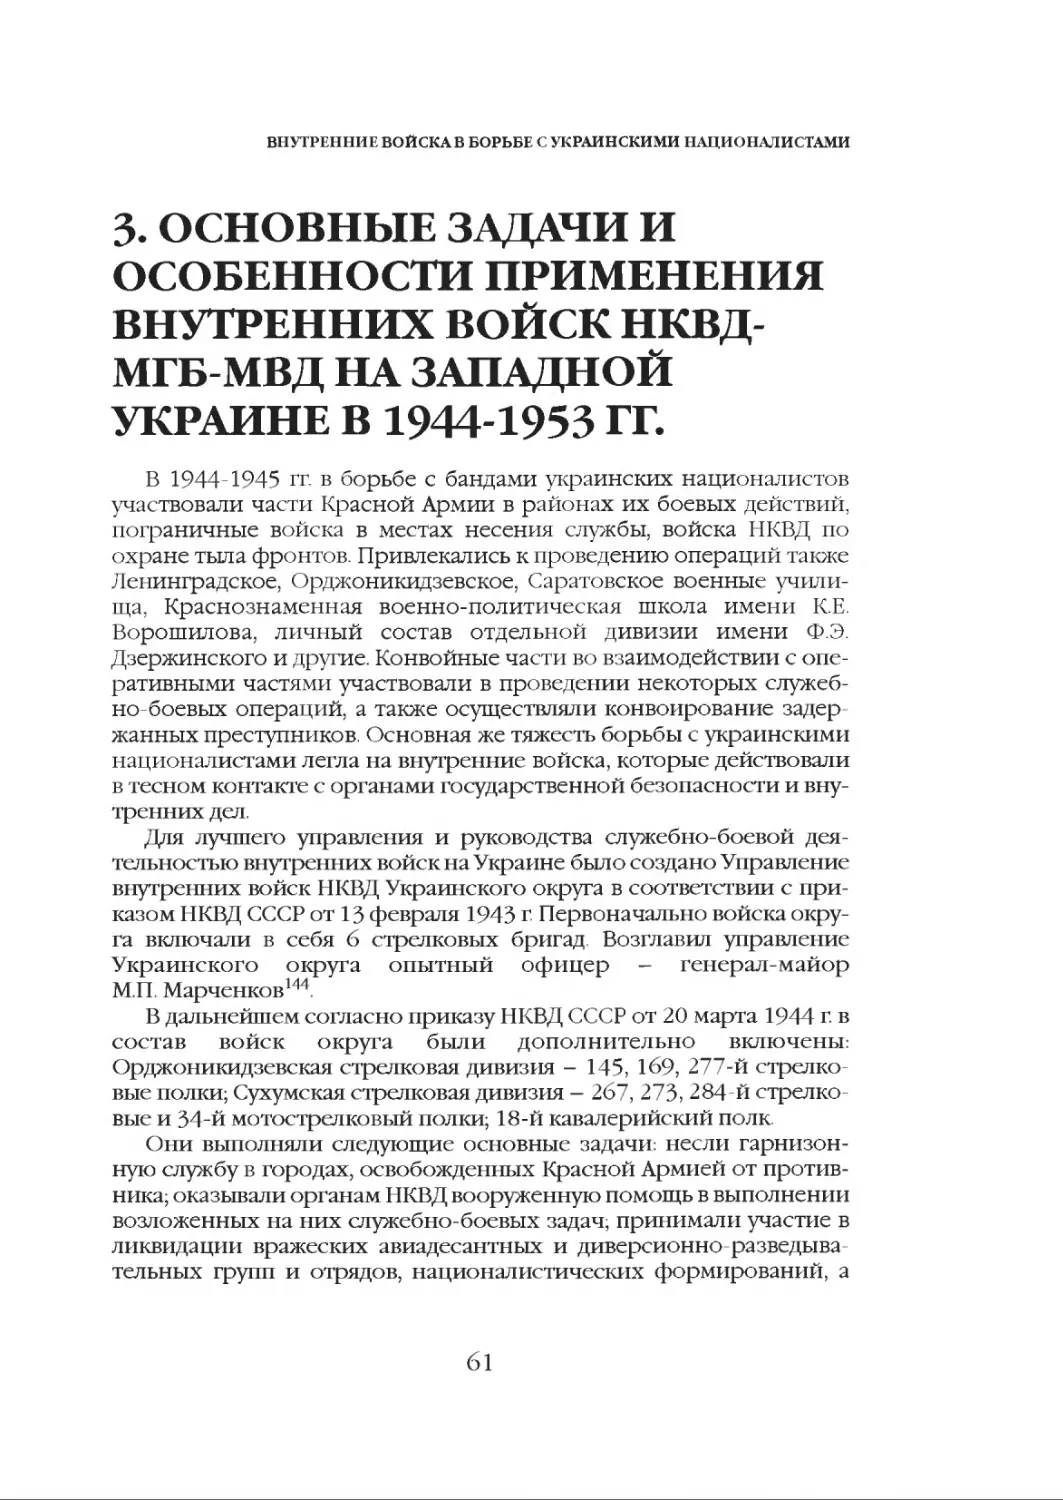 3. Основные задачи и особенности применения внутренних войск НКВД-МГБ-МВД на Западной Украине в 1944-1953 гг